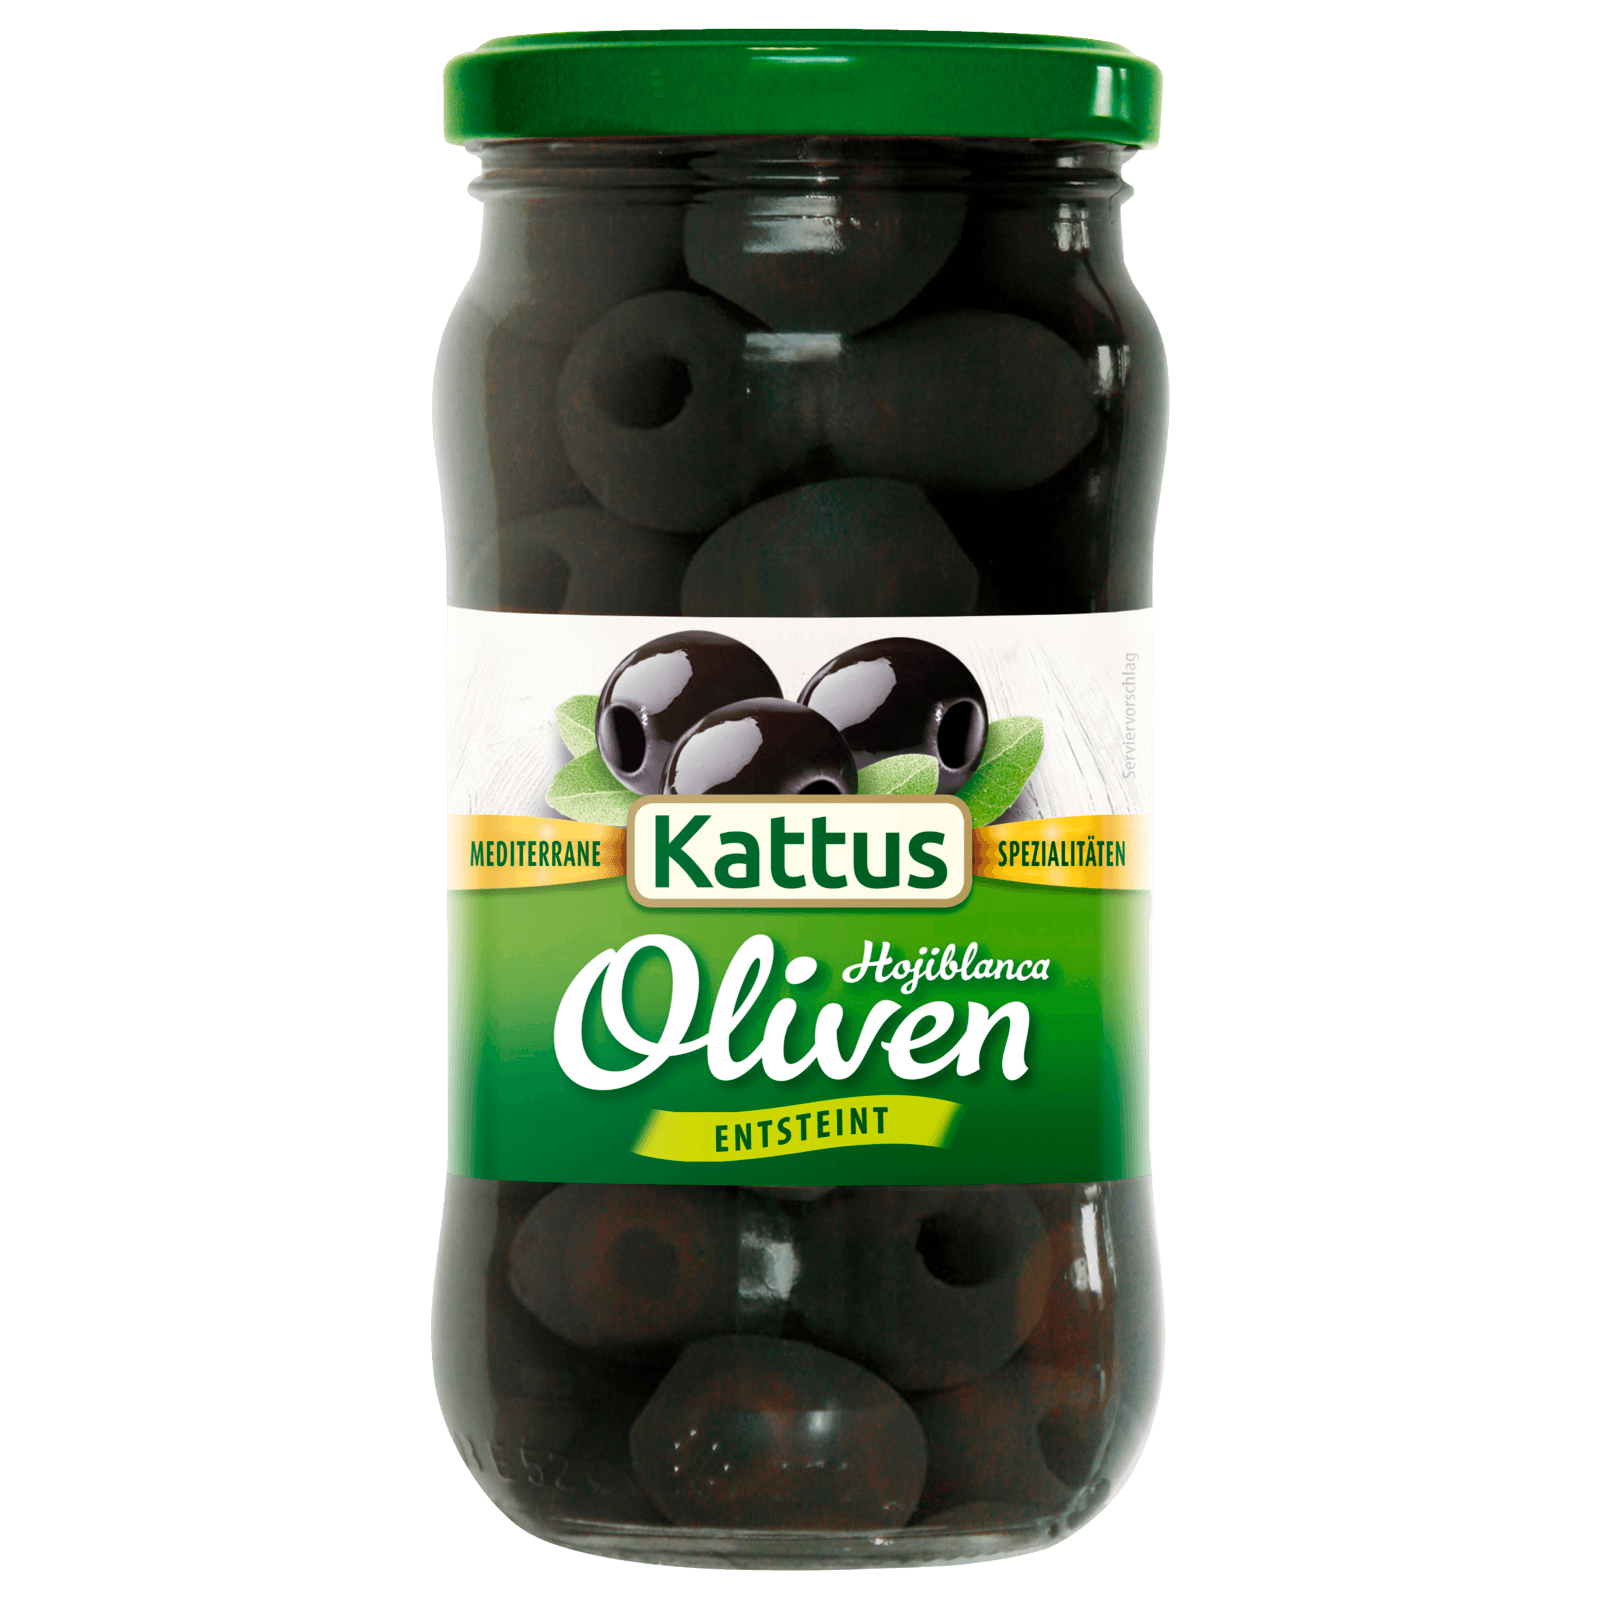 Kattus Schwarze Oliven entsteint 160g  für 2.99 EUR